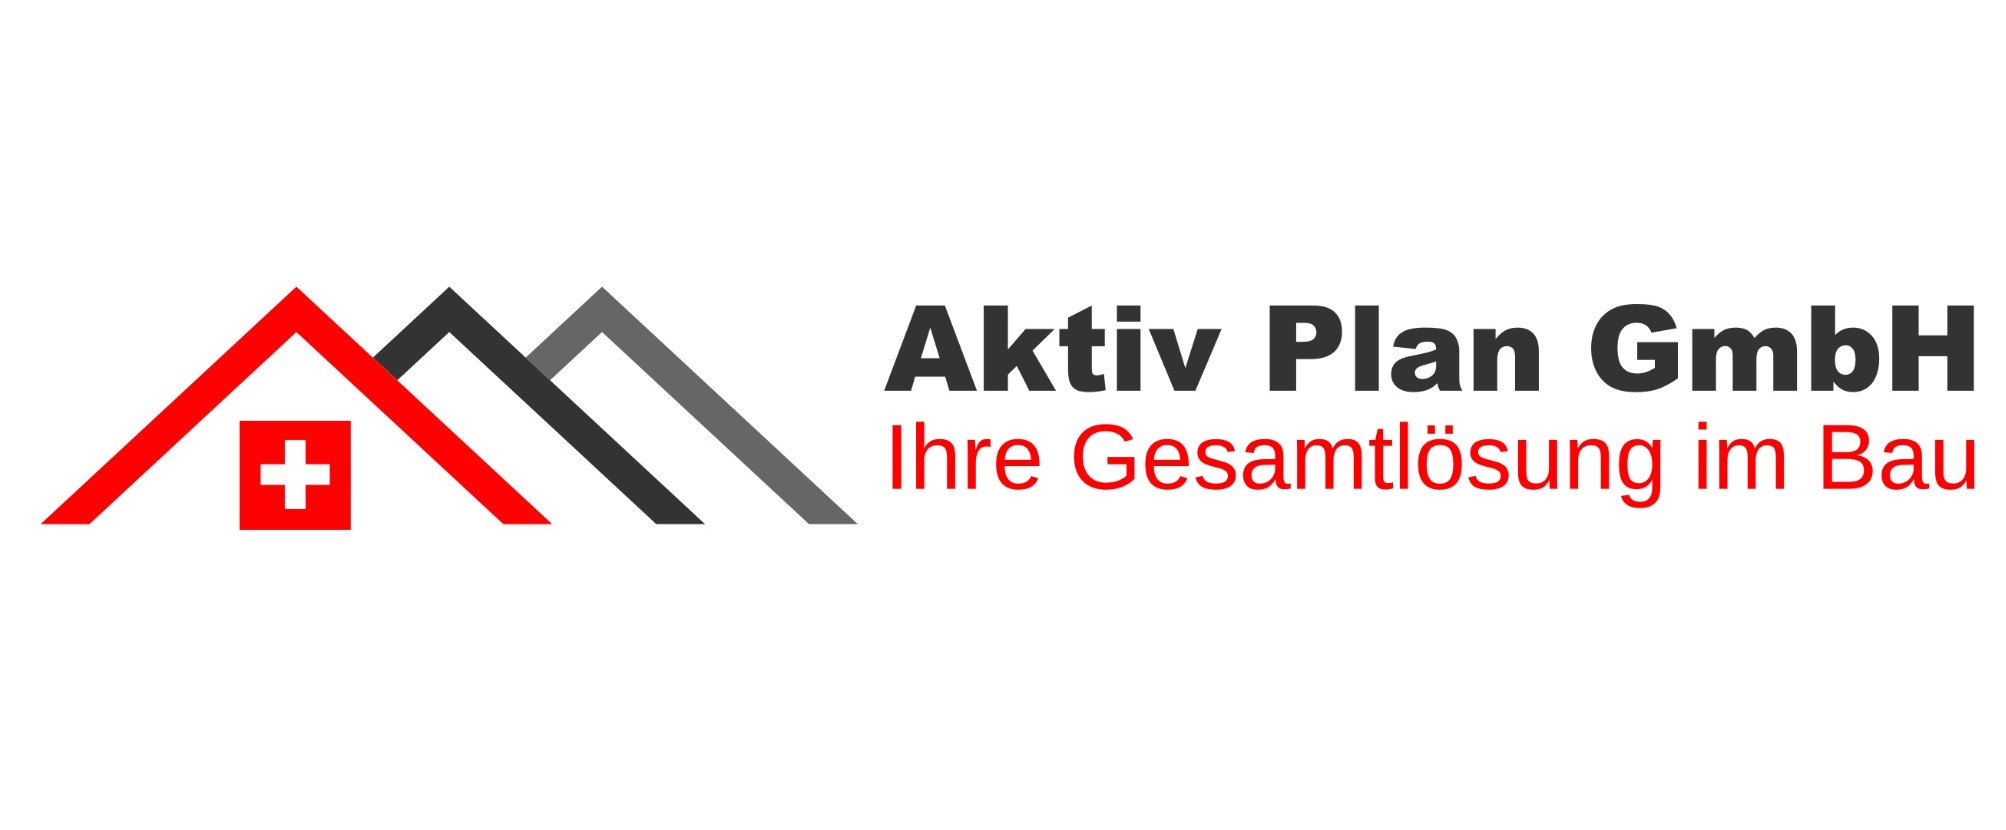 Aktiv Plan GmbH